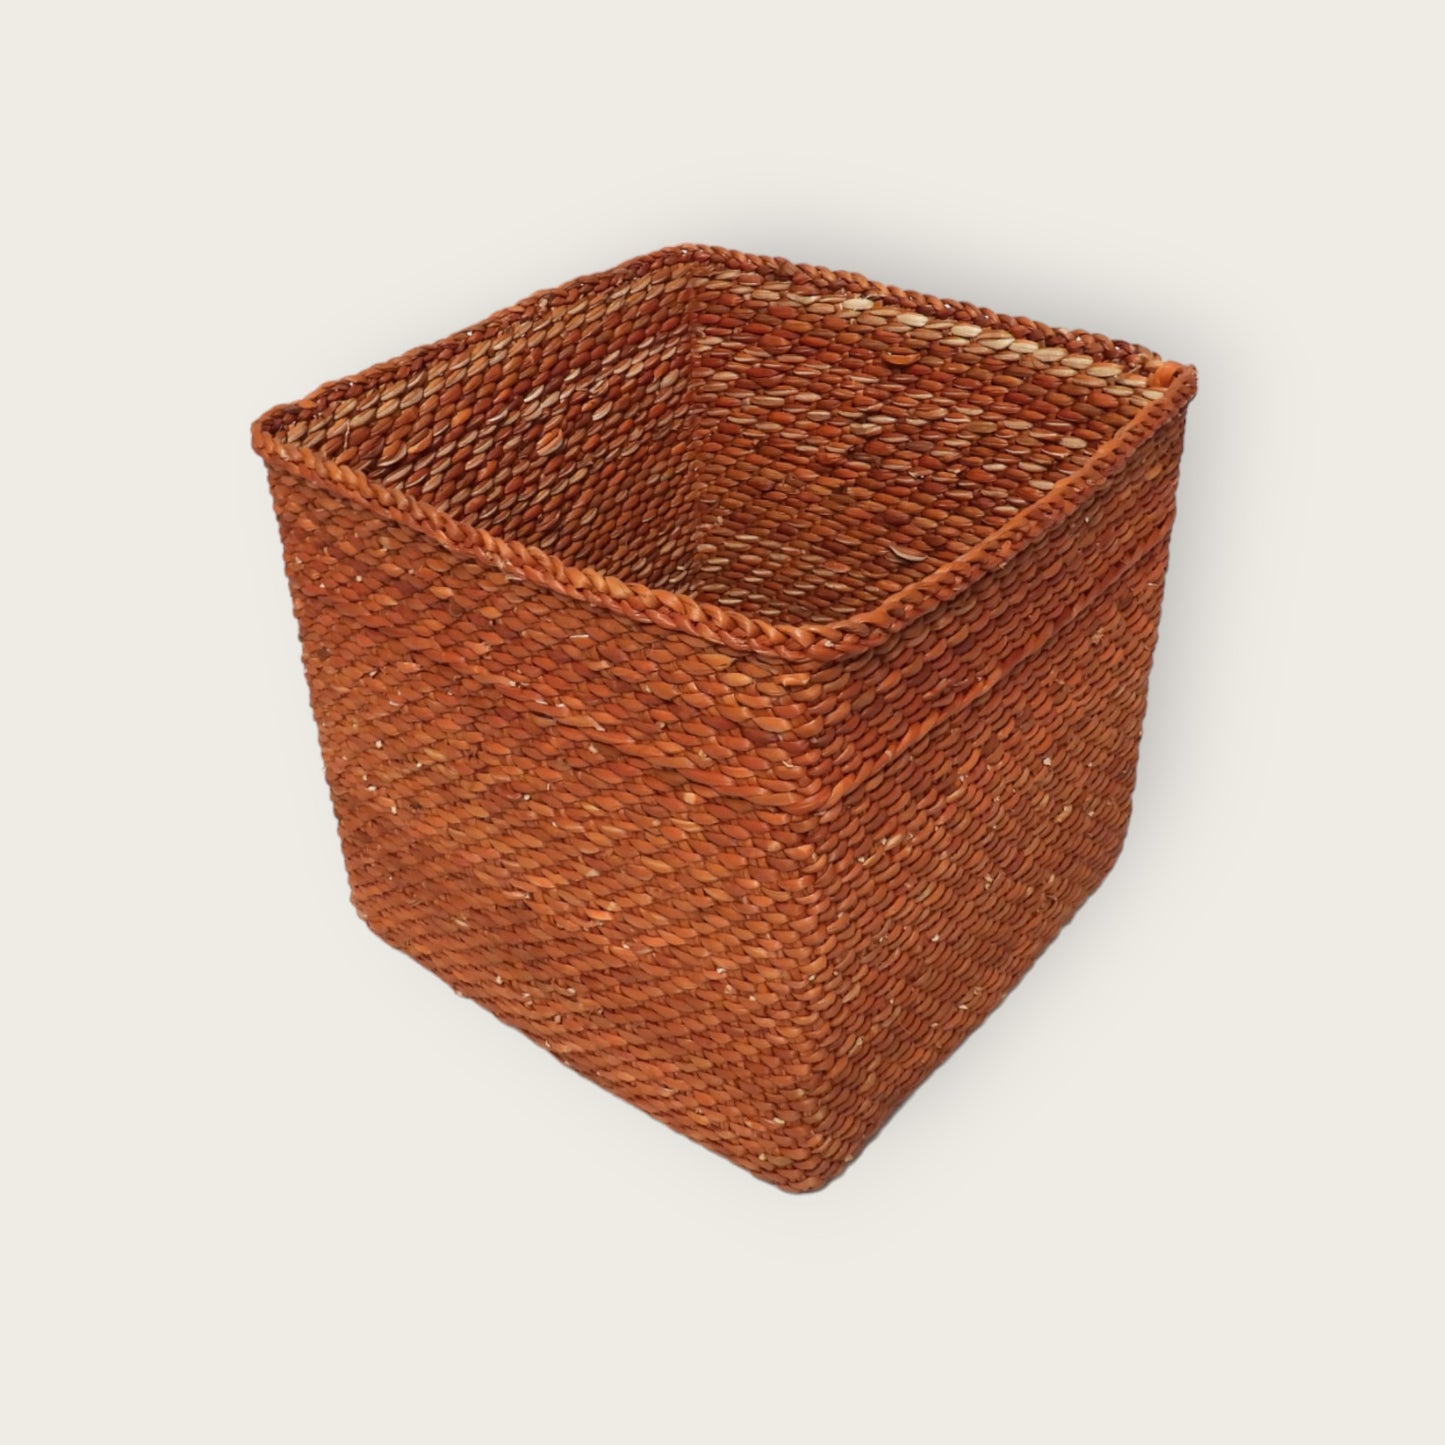 PEMBE Basket - Rust